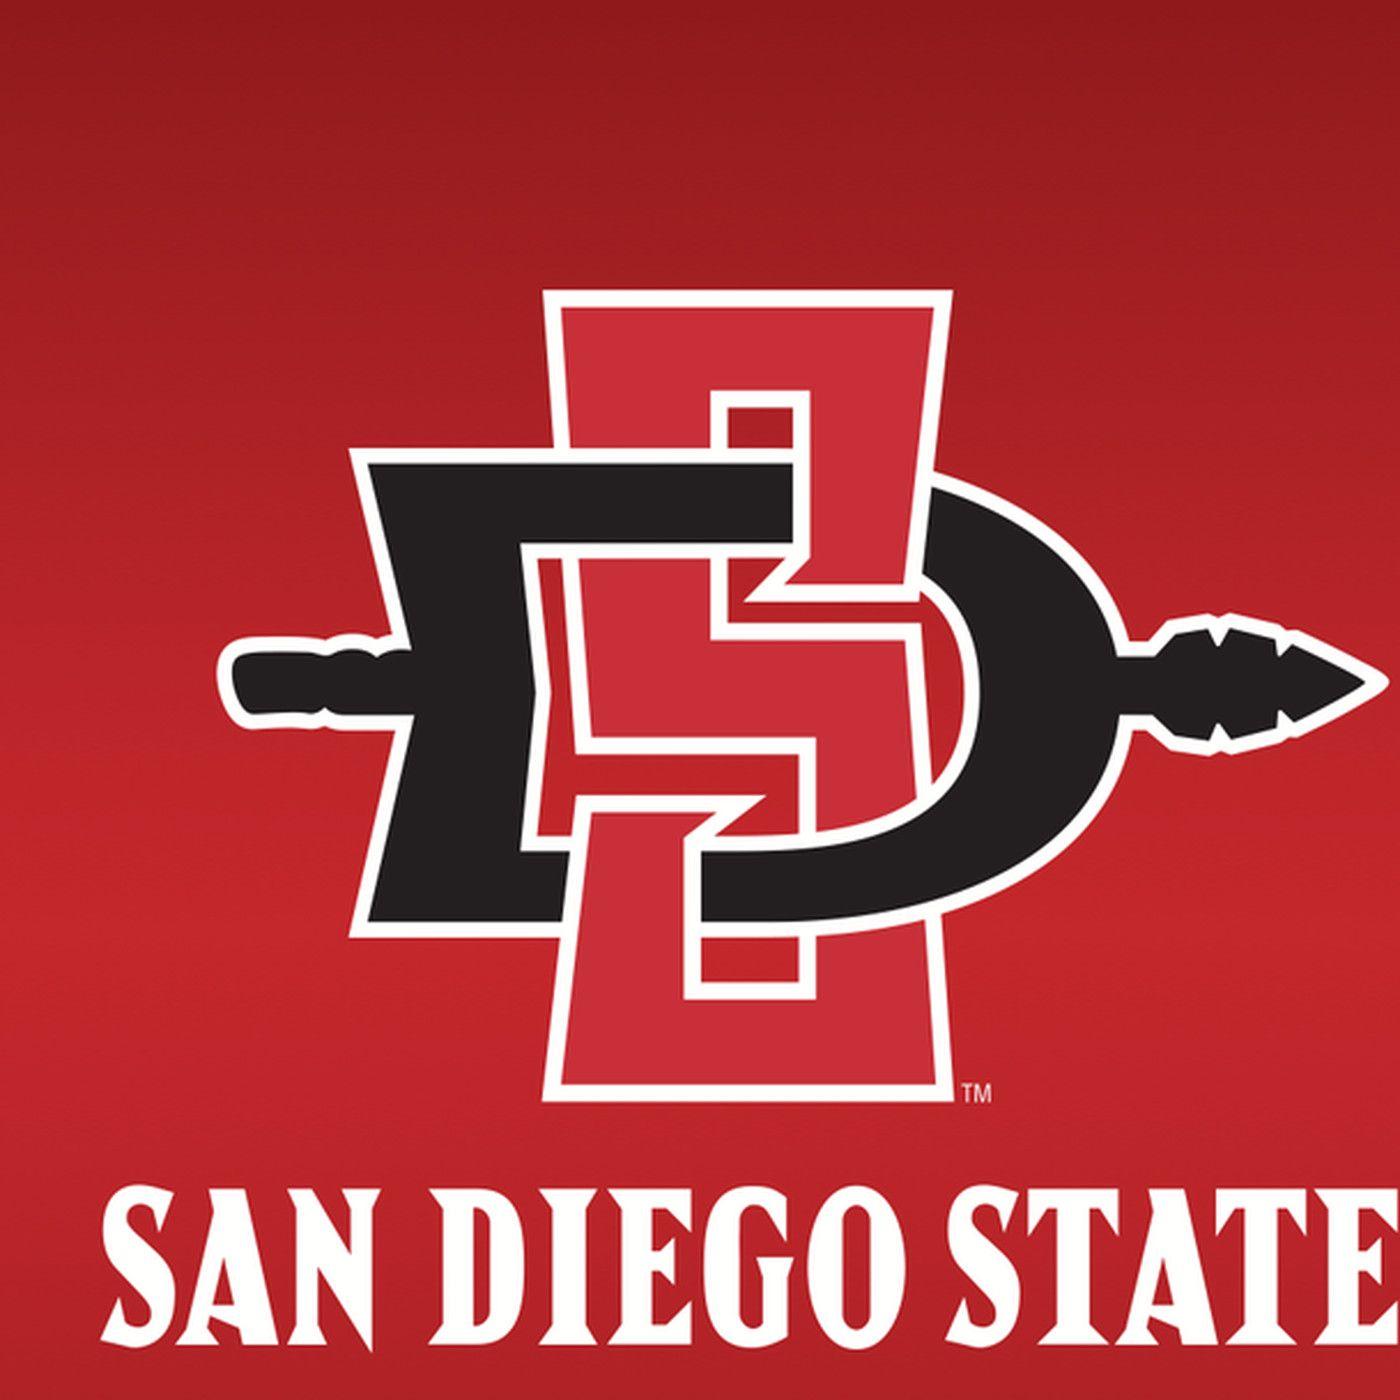 Diego Logo - San Diego State new logo revealed - SBNation.com